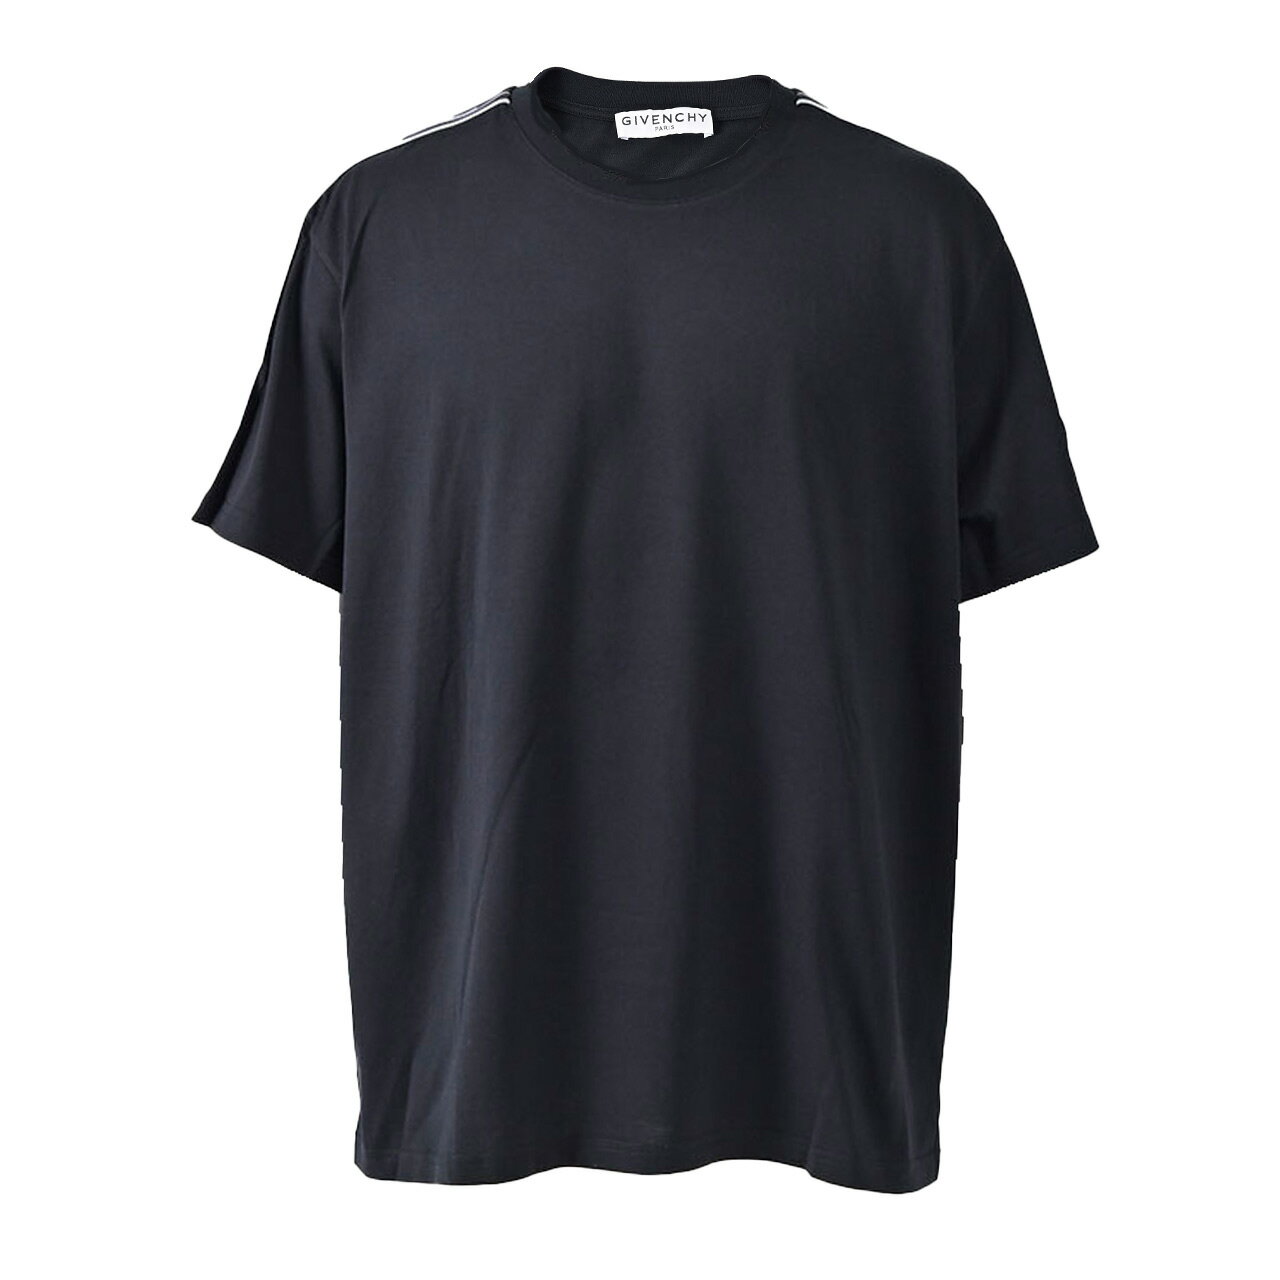 ジバンシィ GIVENCHY Tシャツ BM70UJ3002 001 ブラック メンズ 【ラスト1点 サイズL】 【特別価格 期間限定】